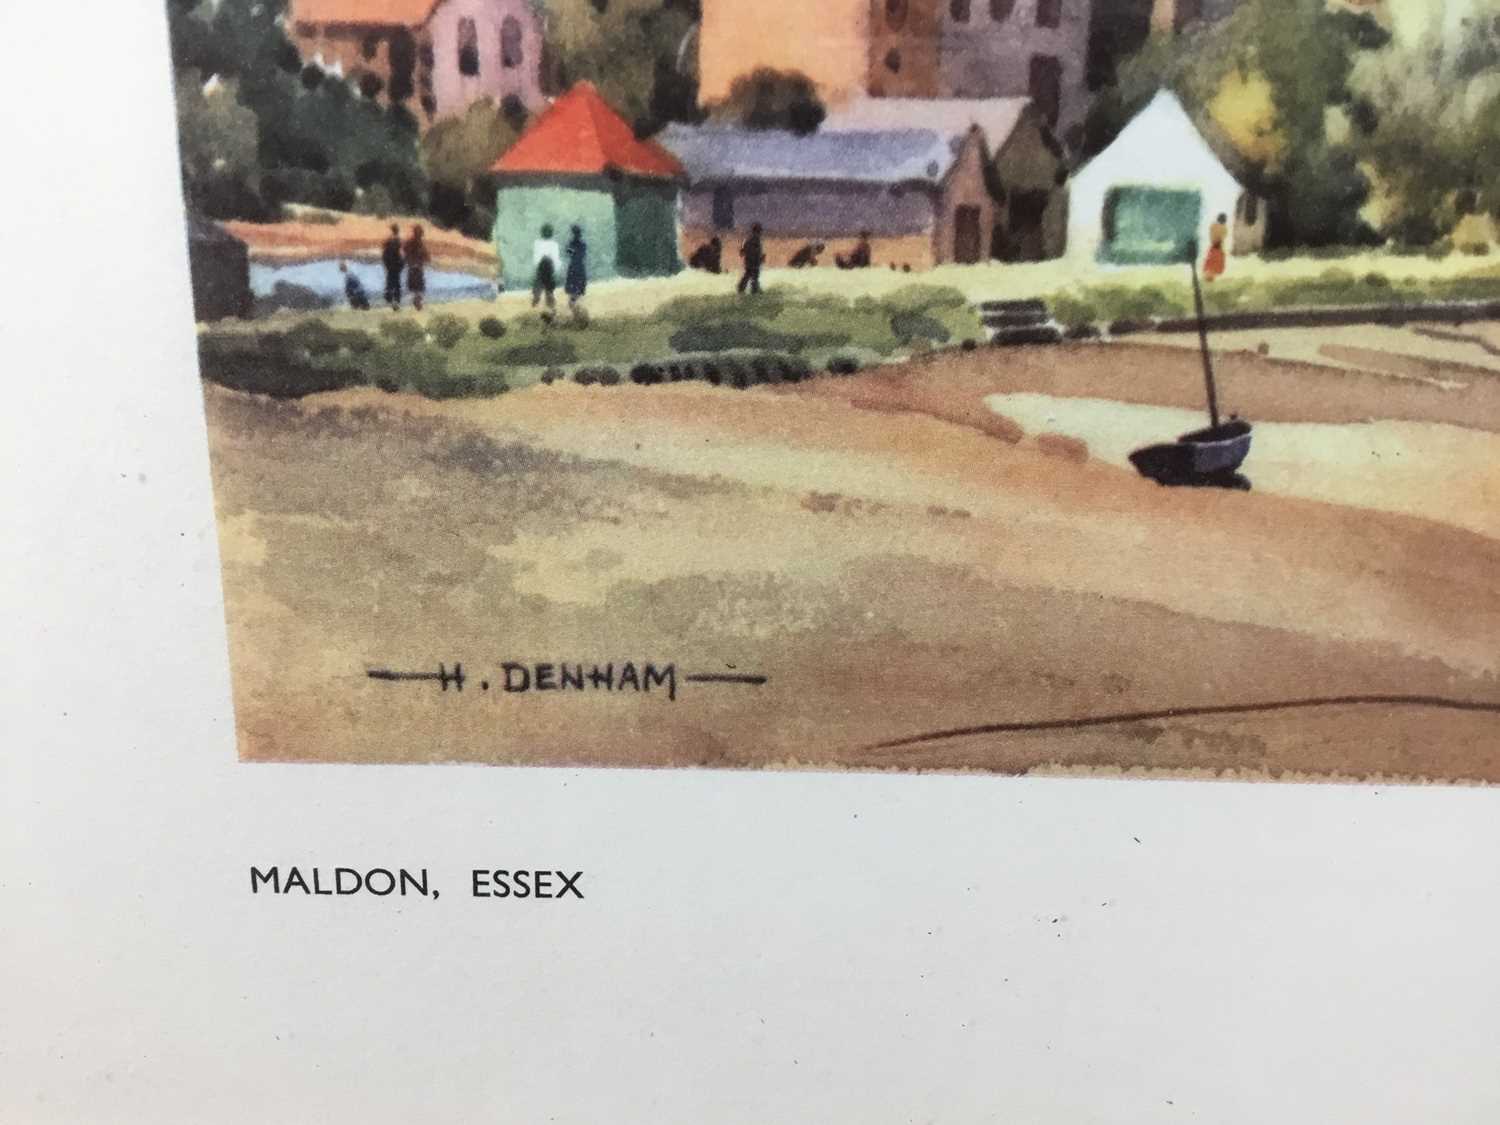 Original Railway Carriage Print Poster: "MALDON, ESSEX”. Artwork by Henry J Denham SMA, SGA from the - Image 3 of 6